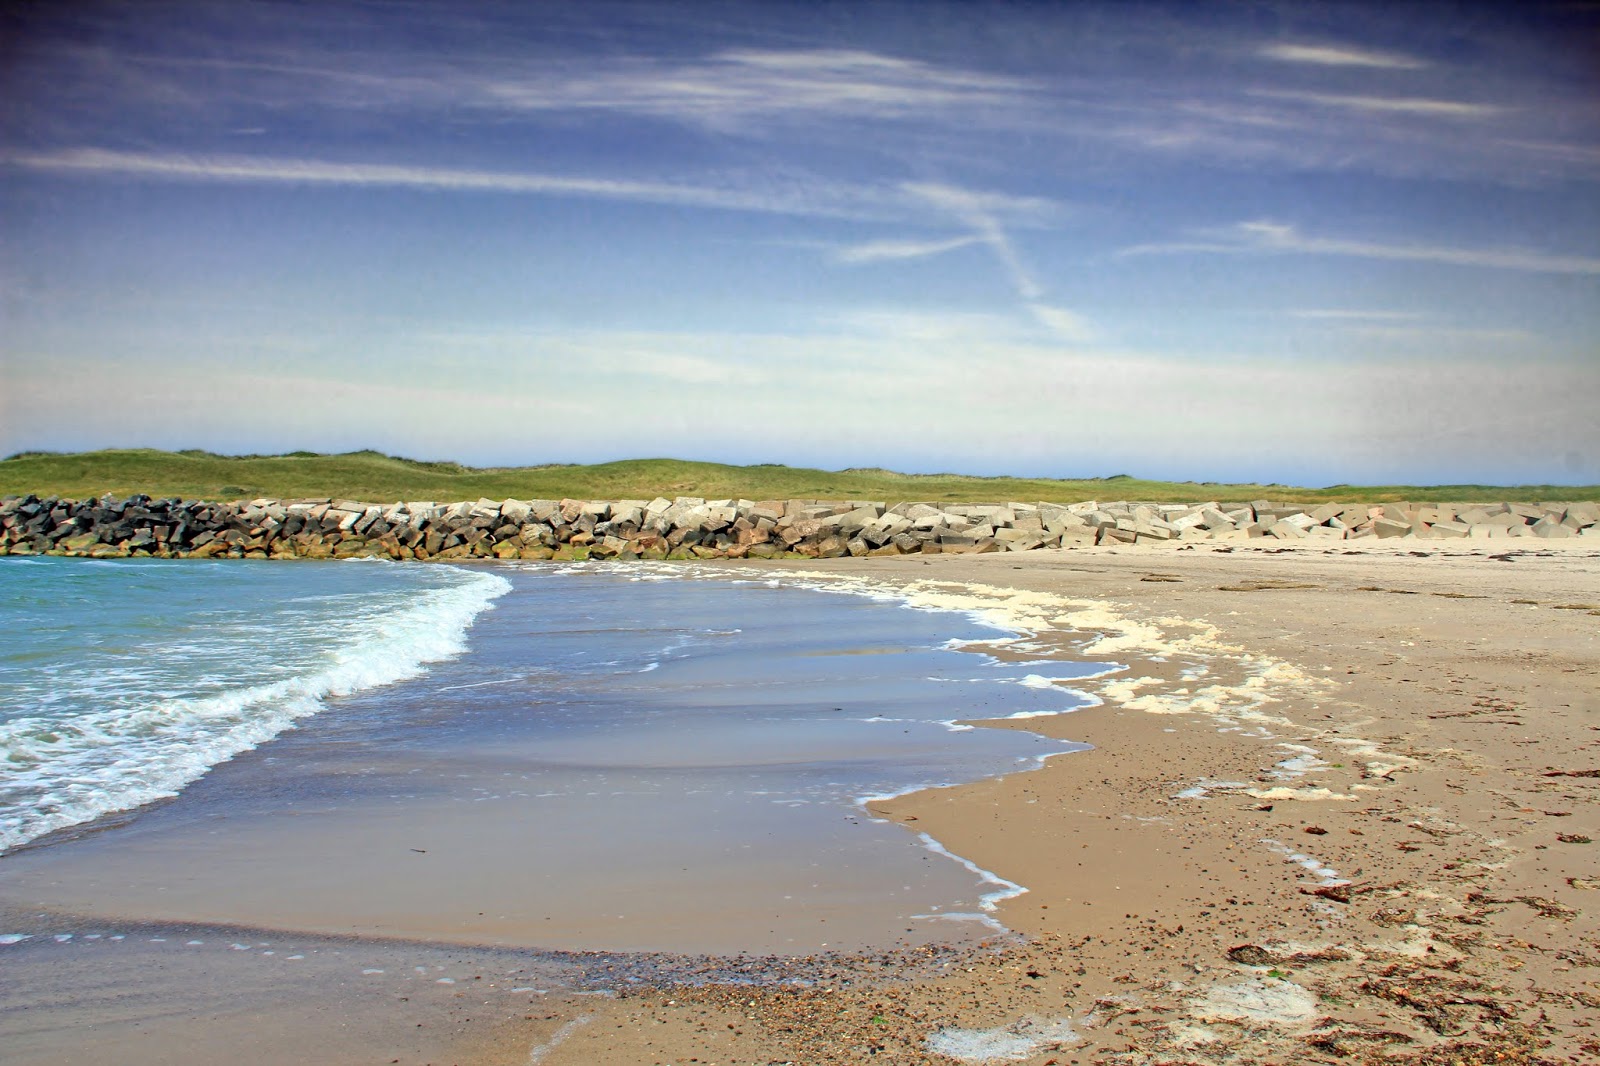 Zdjęcie Hofde Beach - popularne miejsce wśród znawców relaksu